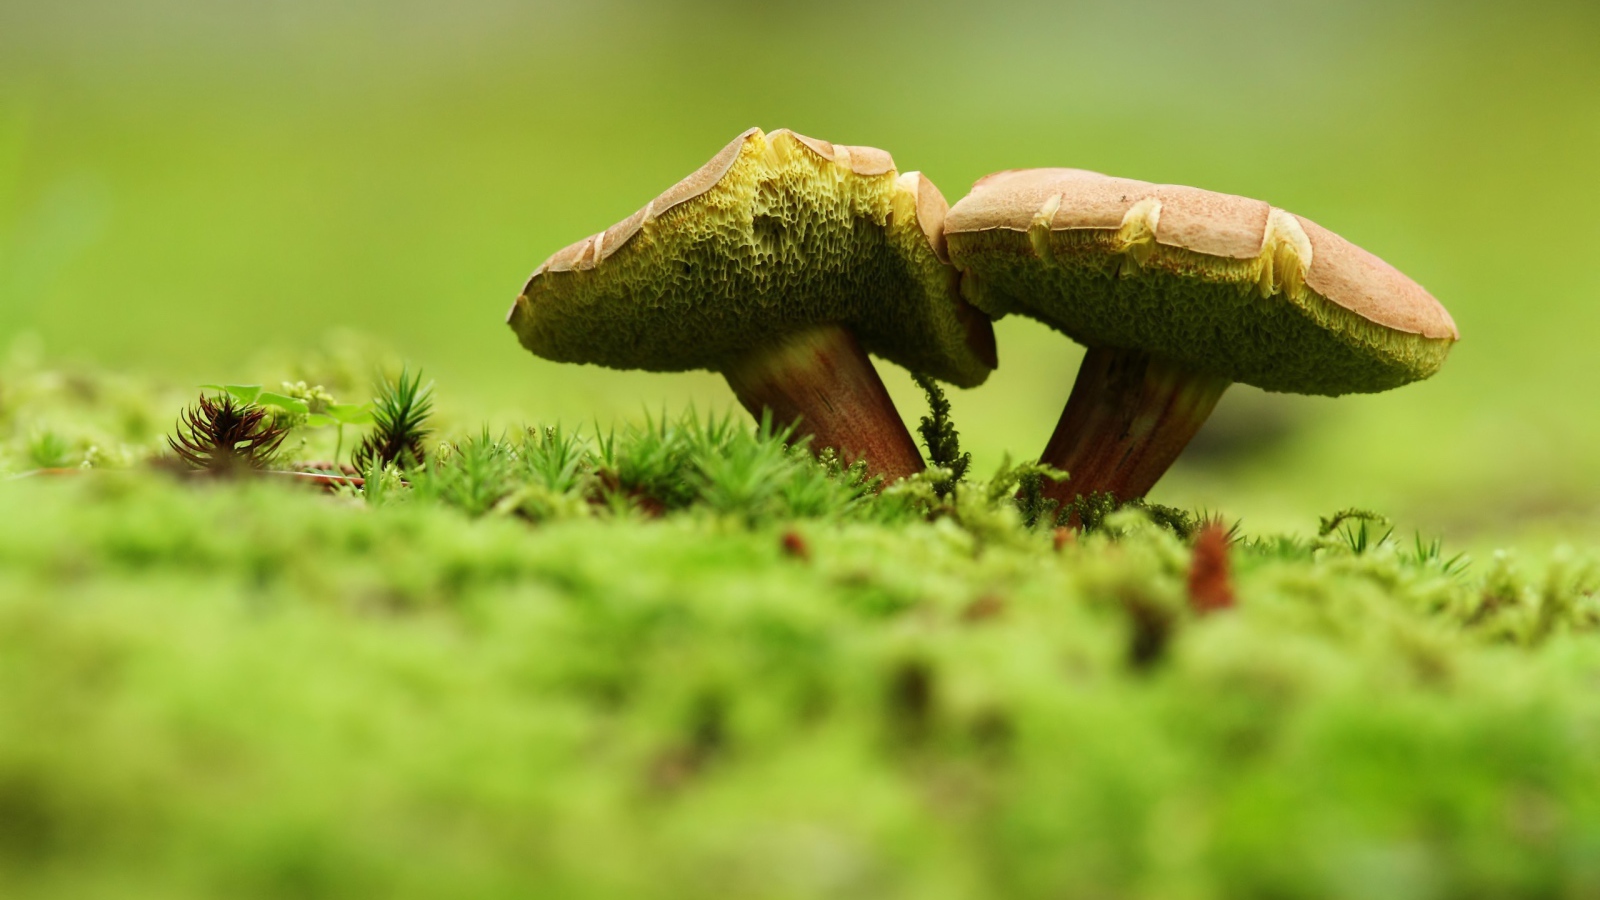 Два зеленых гриба на траве